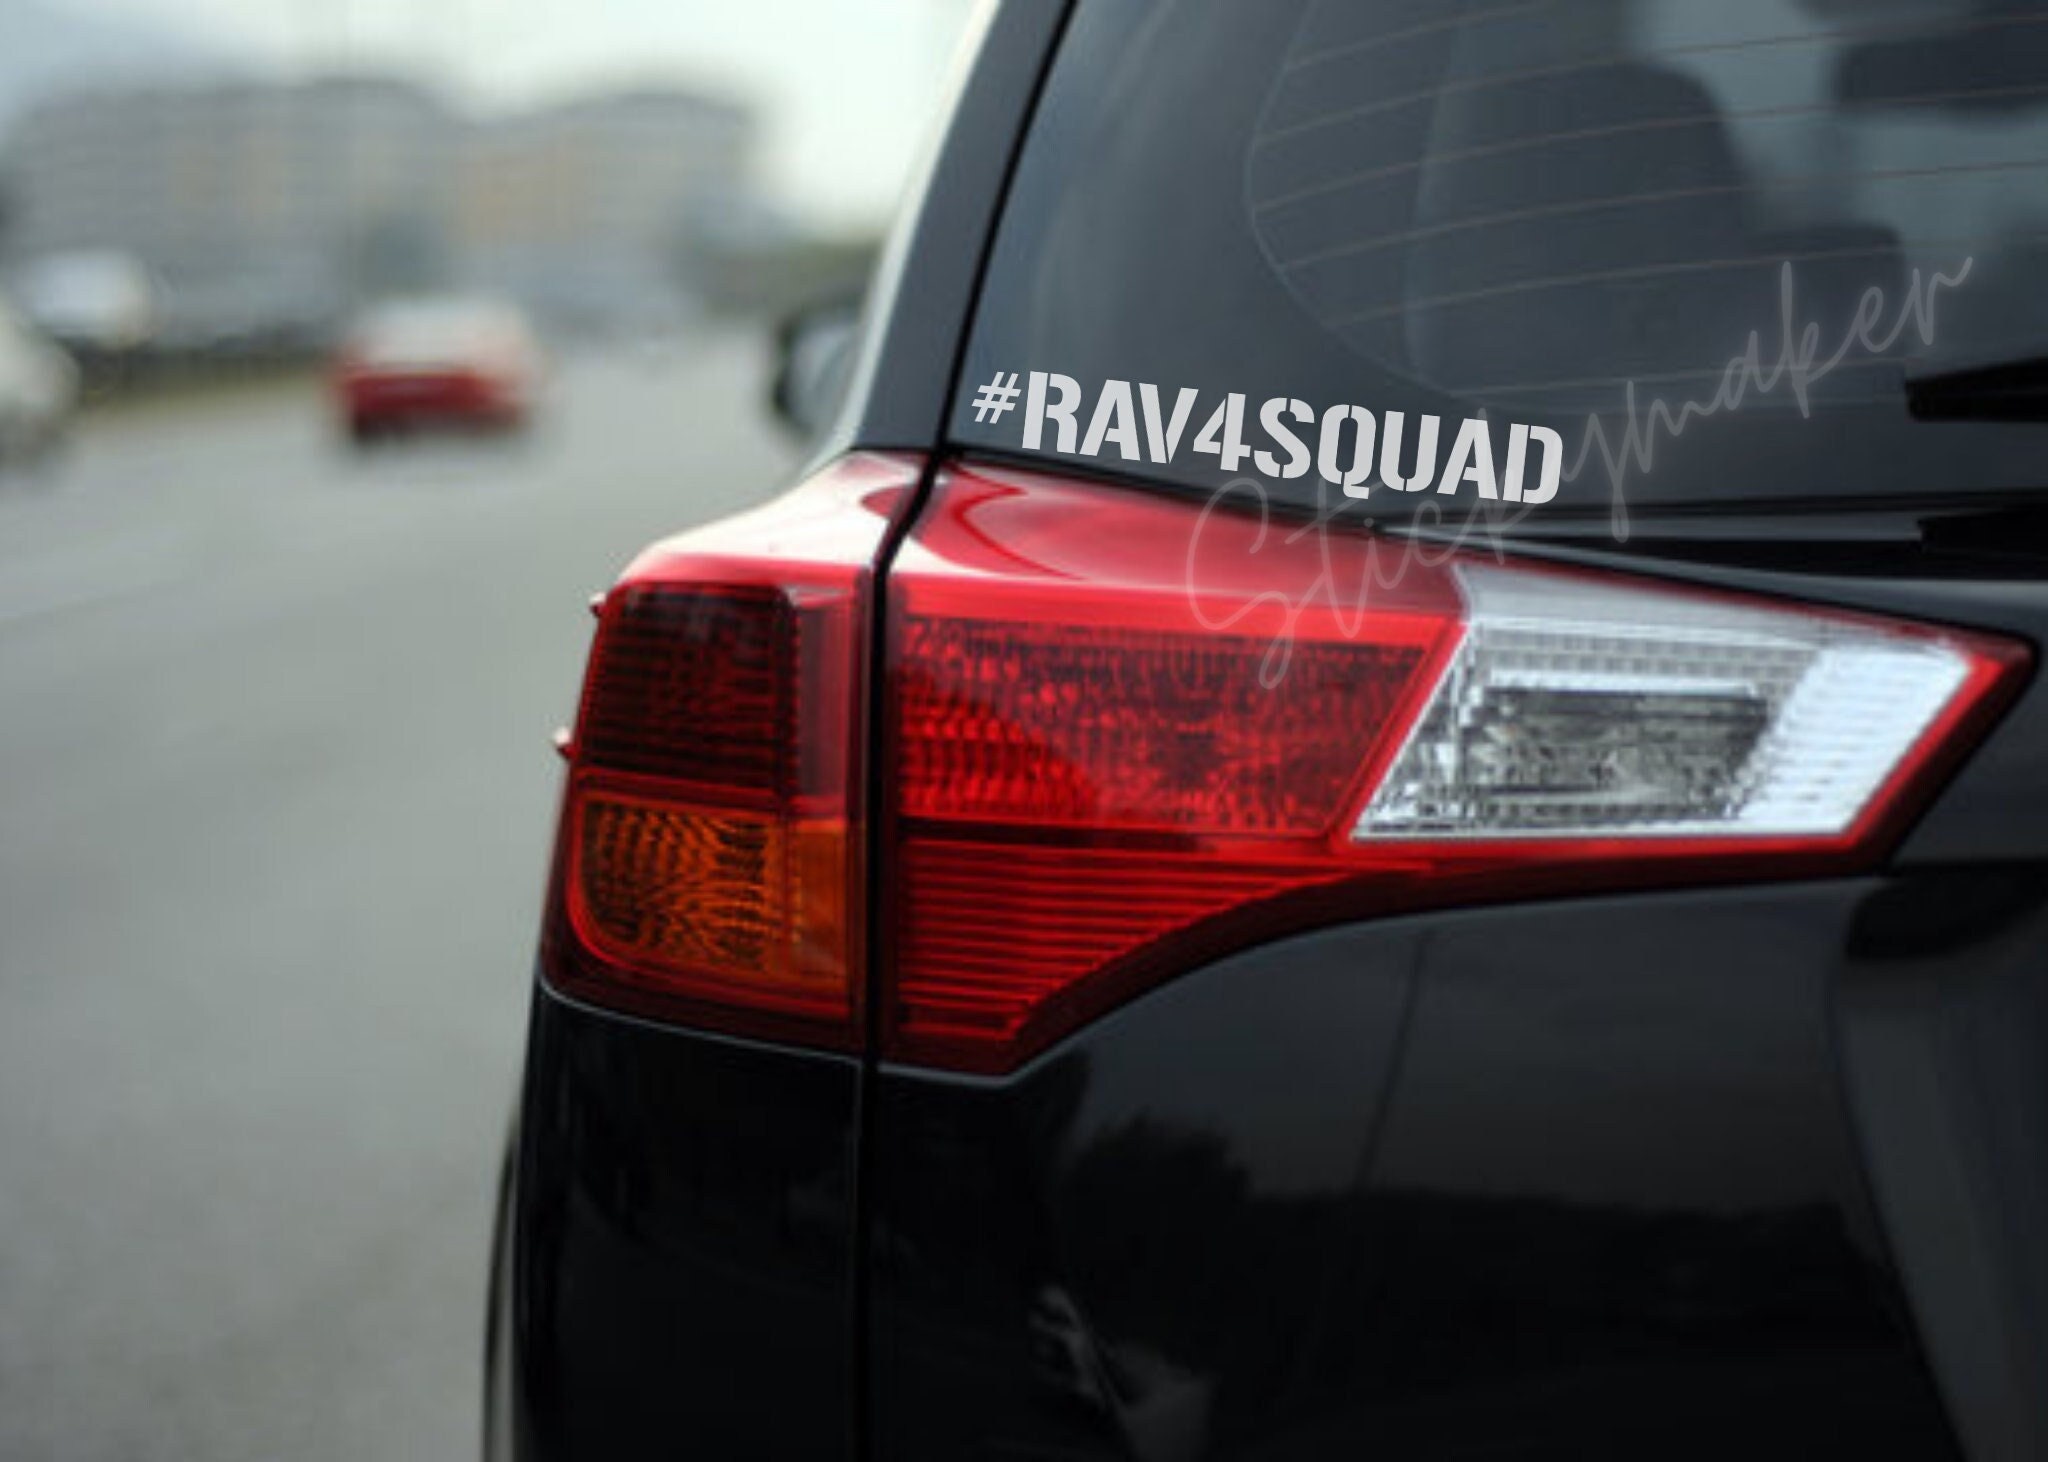 Abdeckung für BMW RAV4 Prime Sienna Tundra Venza Land Cruiser